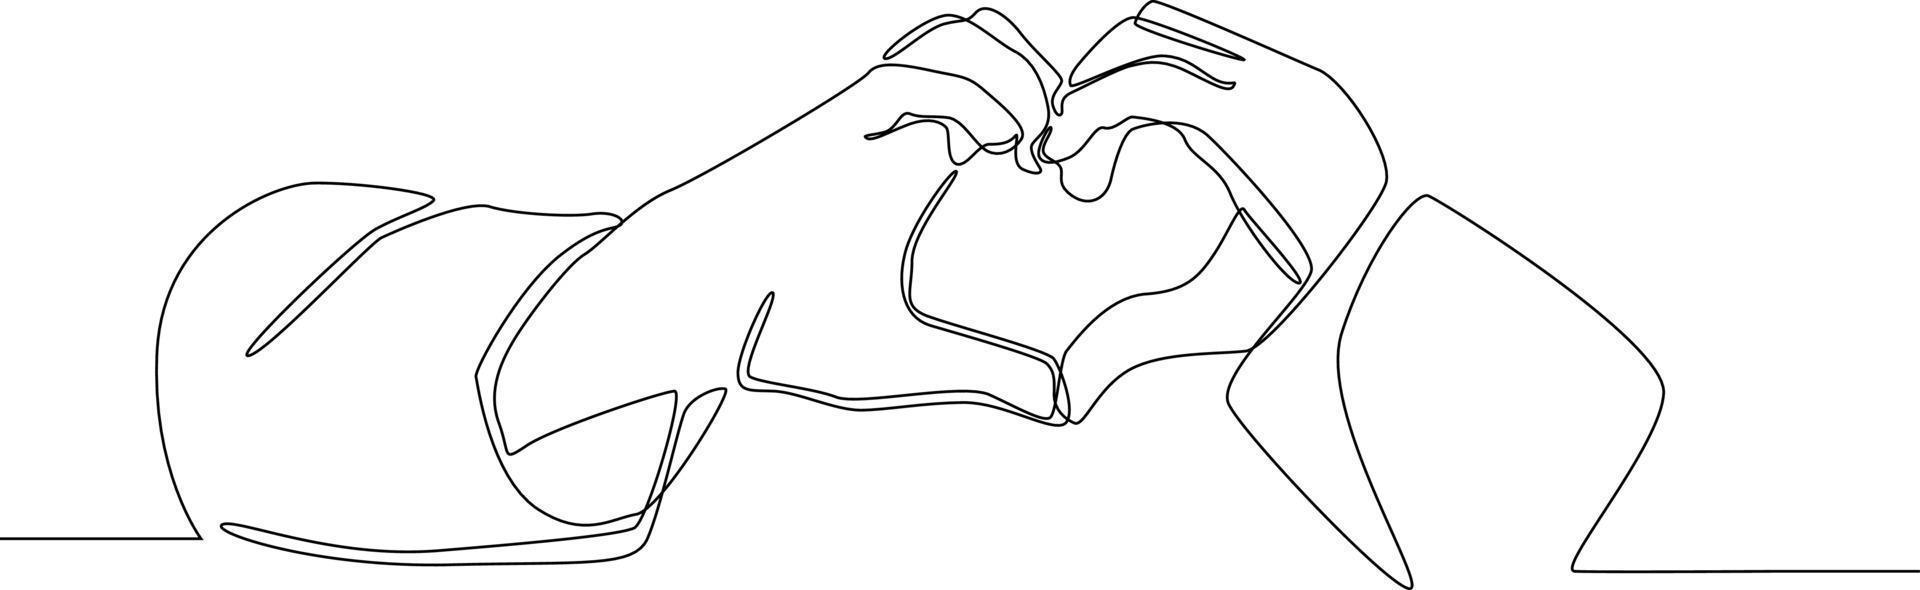 kontinuerlig linjeteckning av hand i form av hjärta. symbol medicin. vektor illustration.